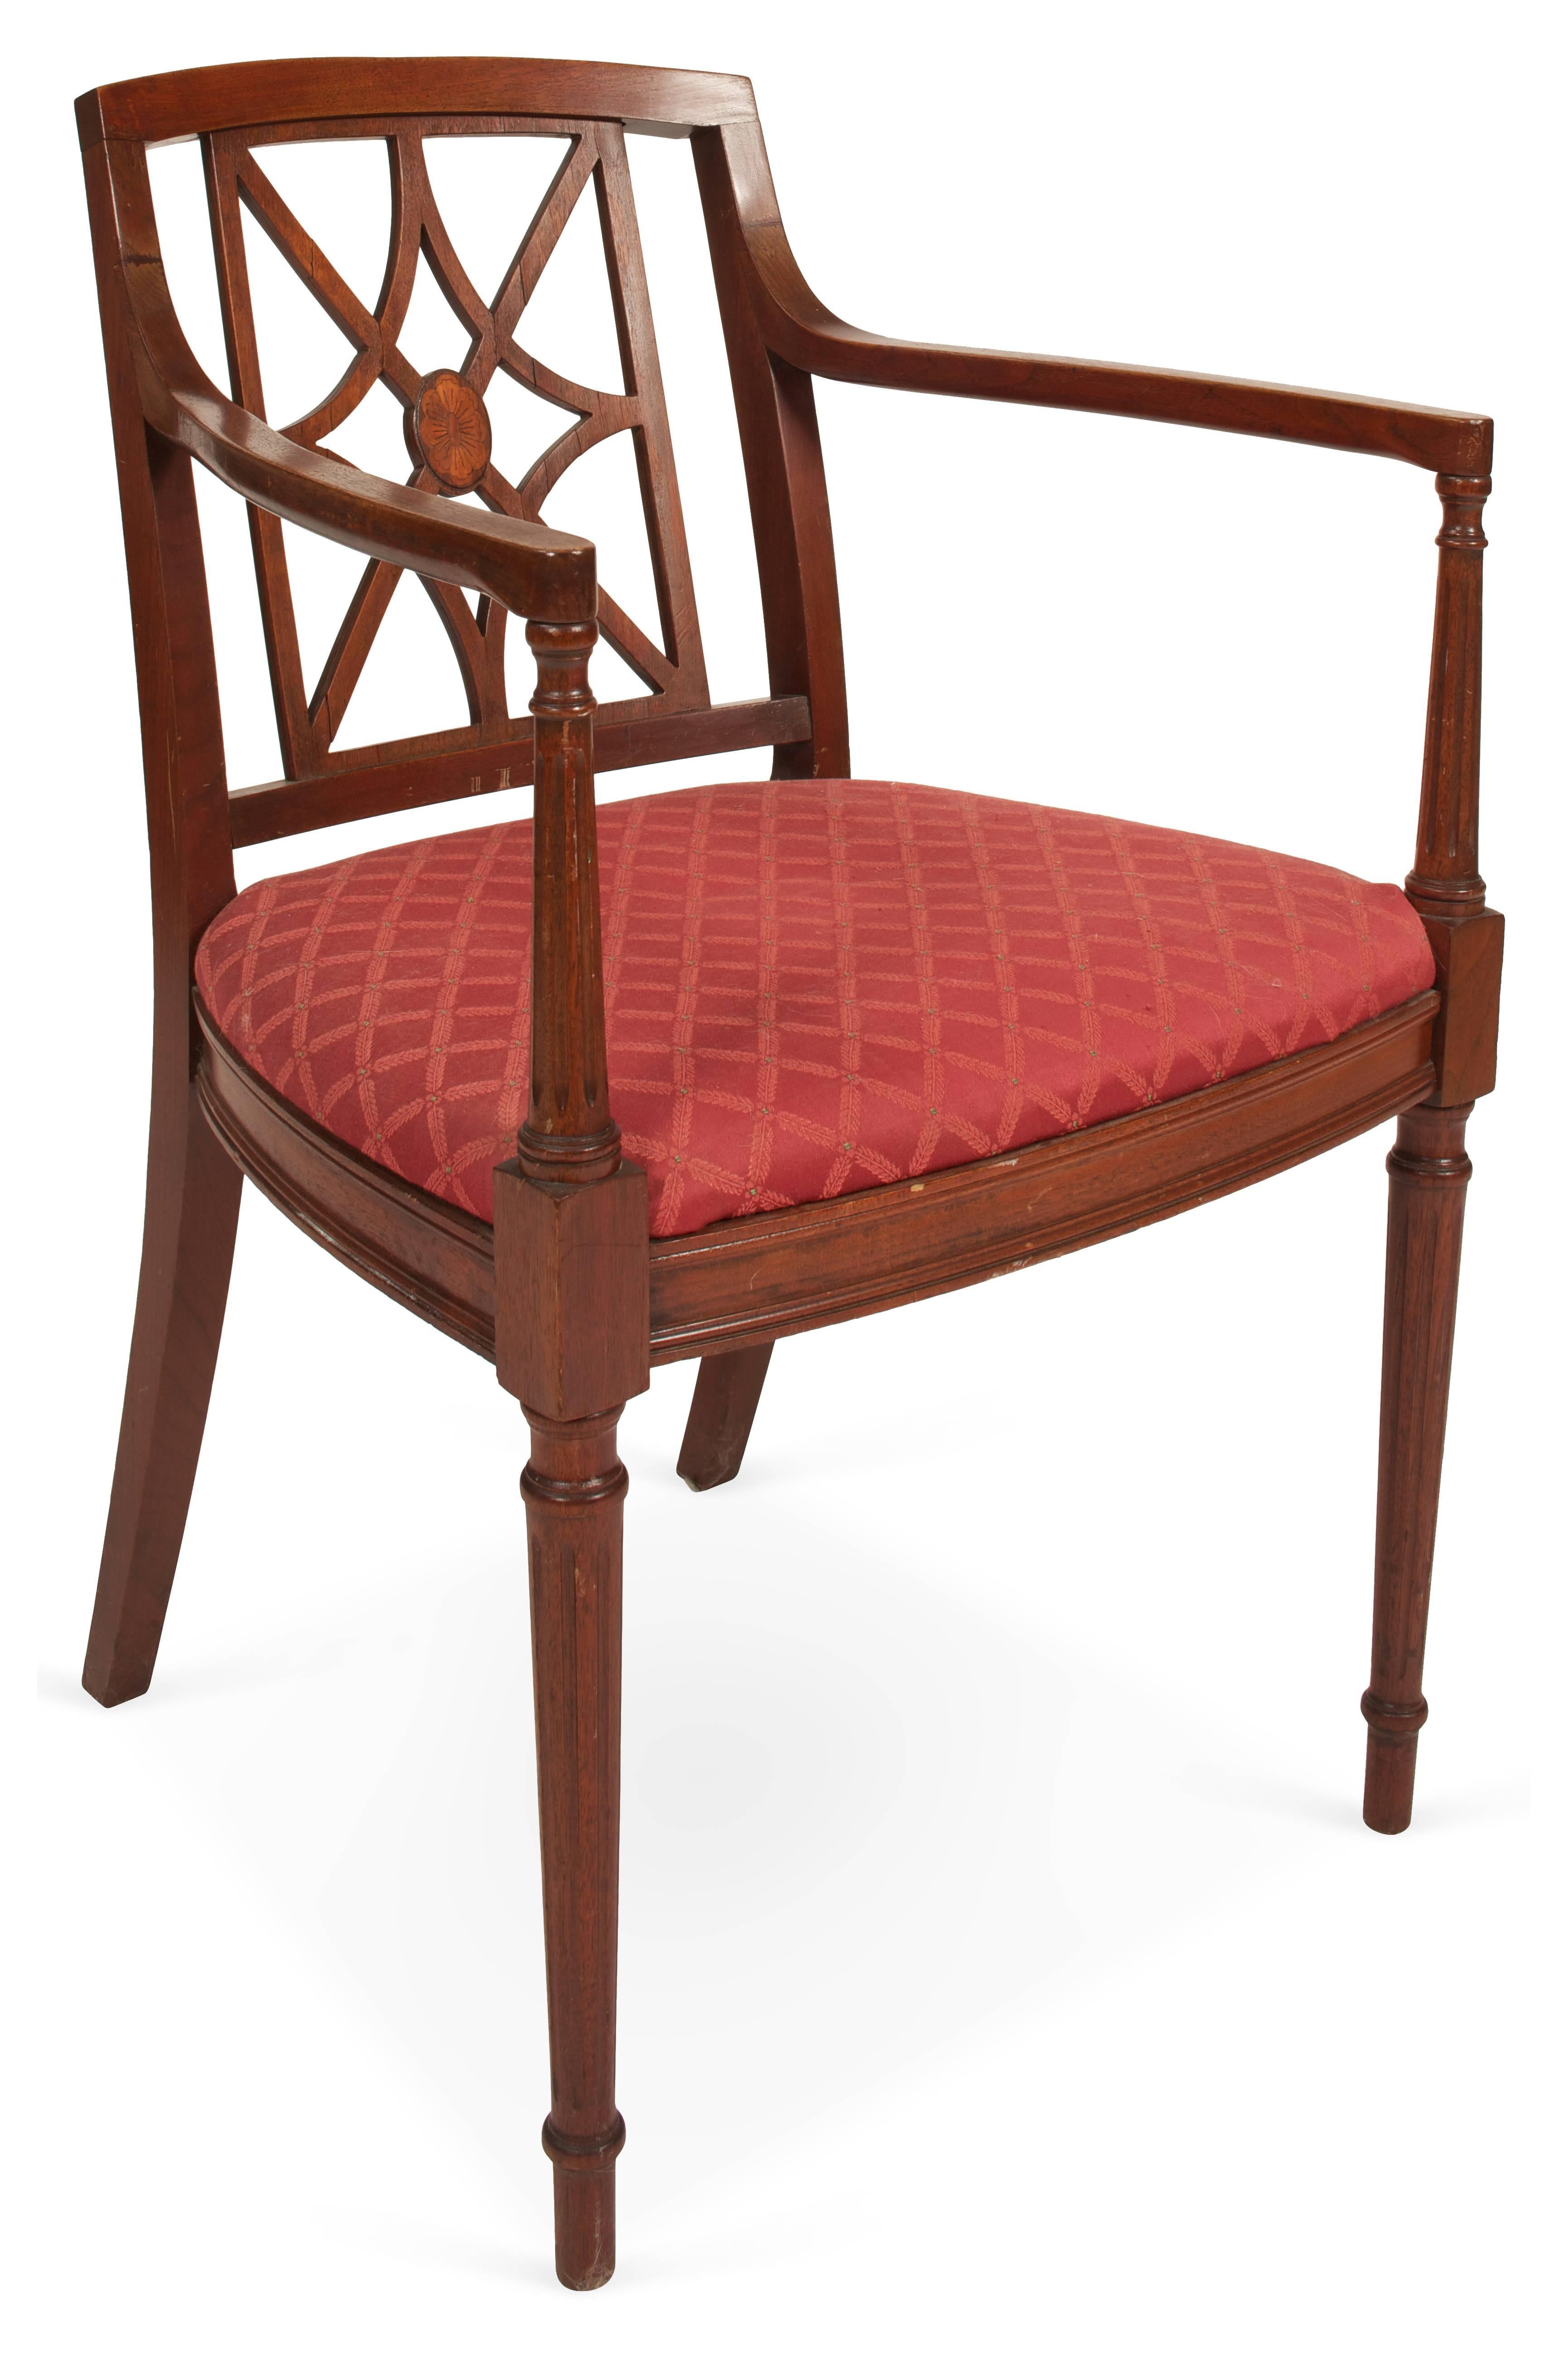 Vintage-Stuhl aus Mahagoni im englischen Sheraton-Stil mit durchbrochener Rückenlehne, gepolstertem Sitz, kannelierten Vorderbeinen und Armlehnen.